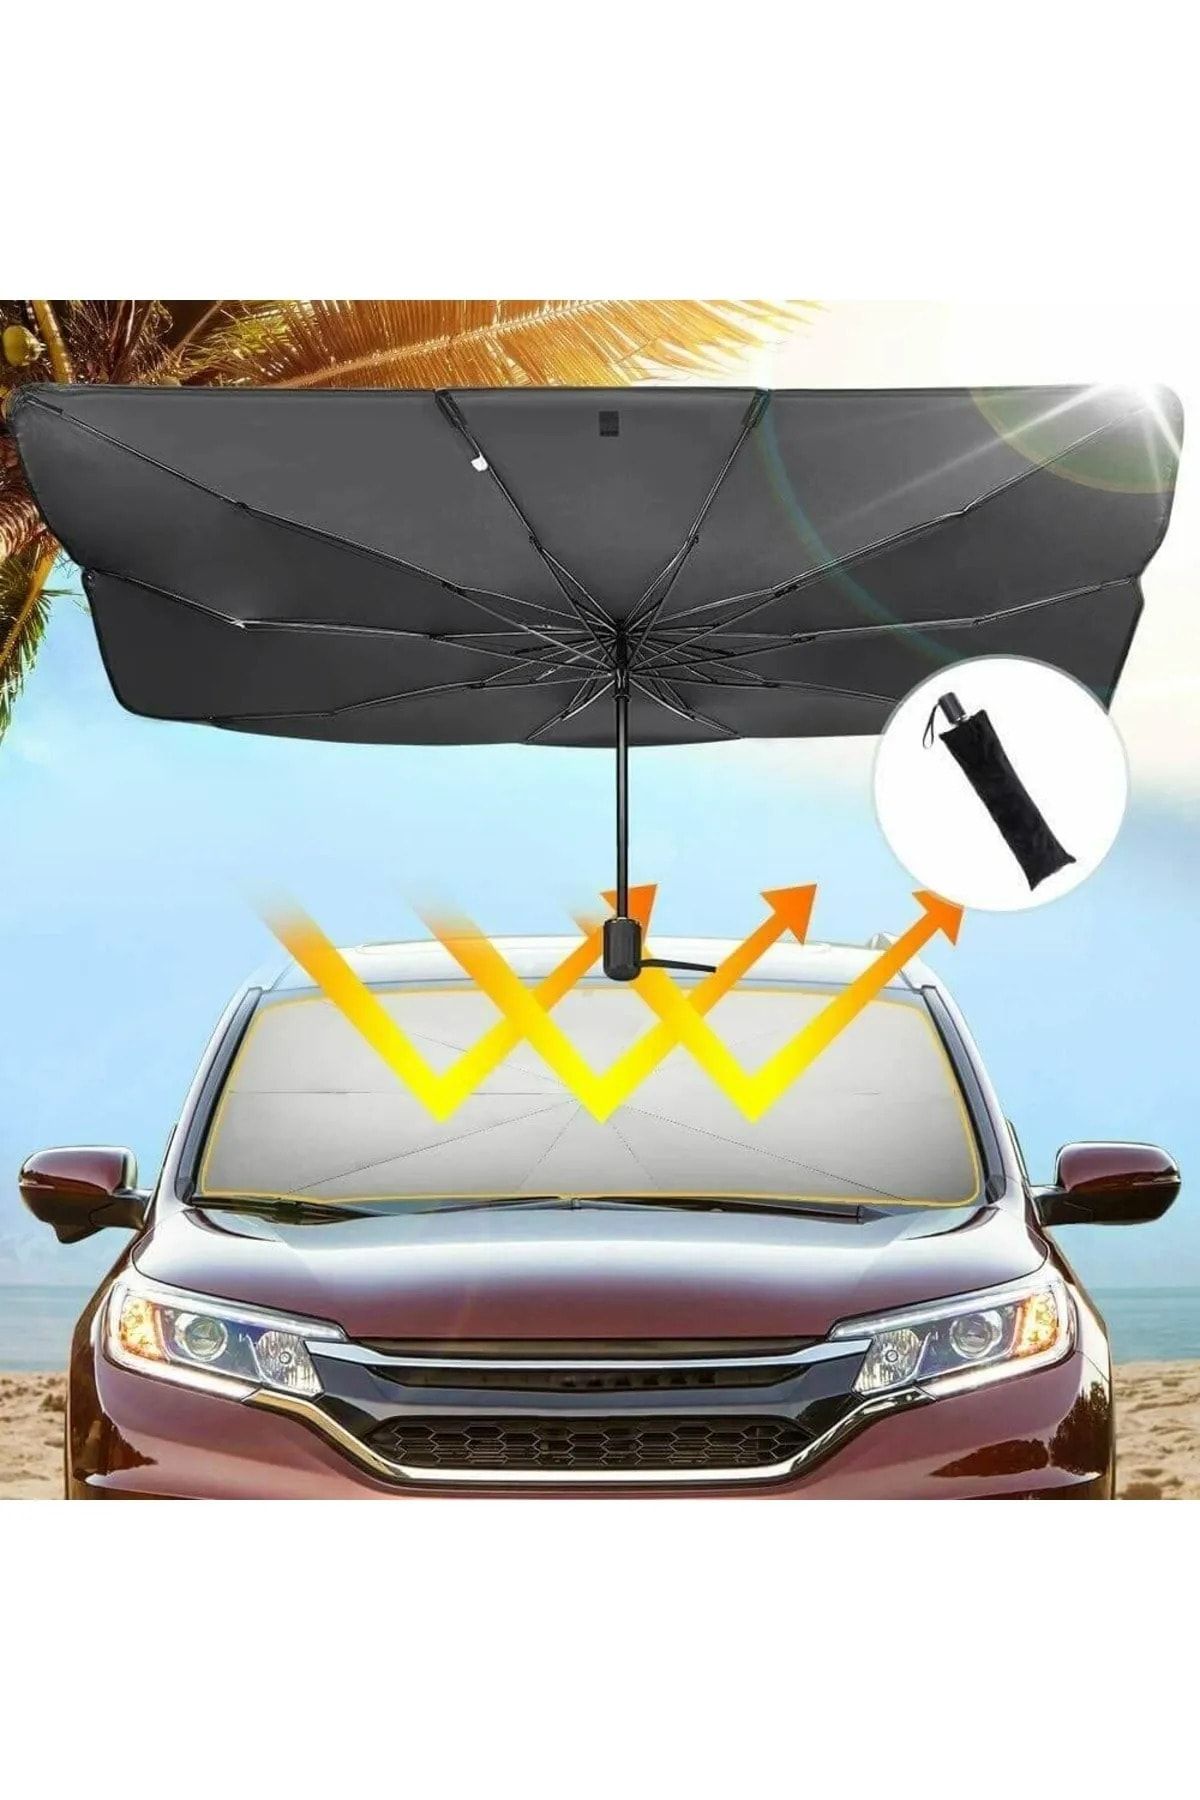 Universal Tüm Araçlar Için Araba Ön Cam Güneşlik Katlanabilir Güneşlik Şemsiye Ön Cam Gölgelik